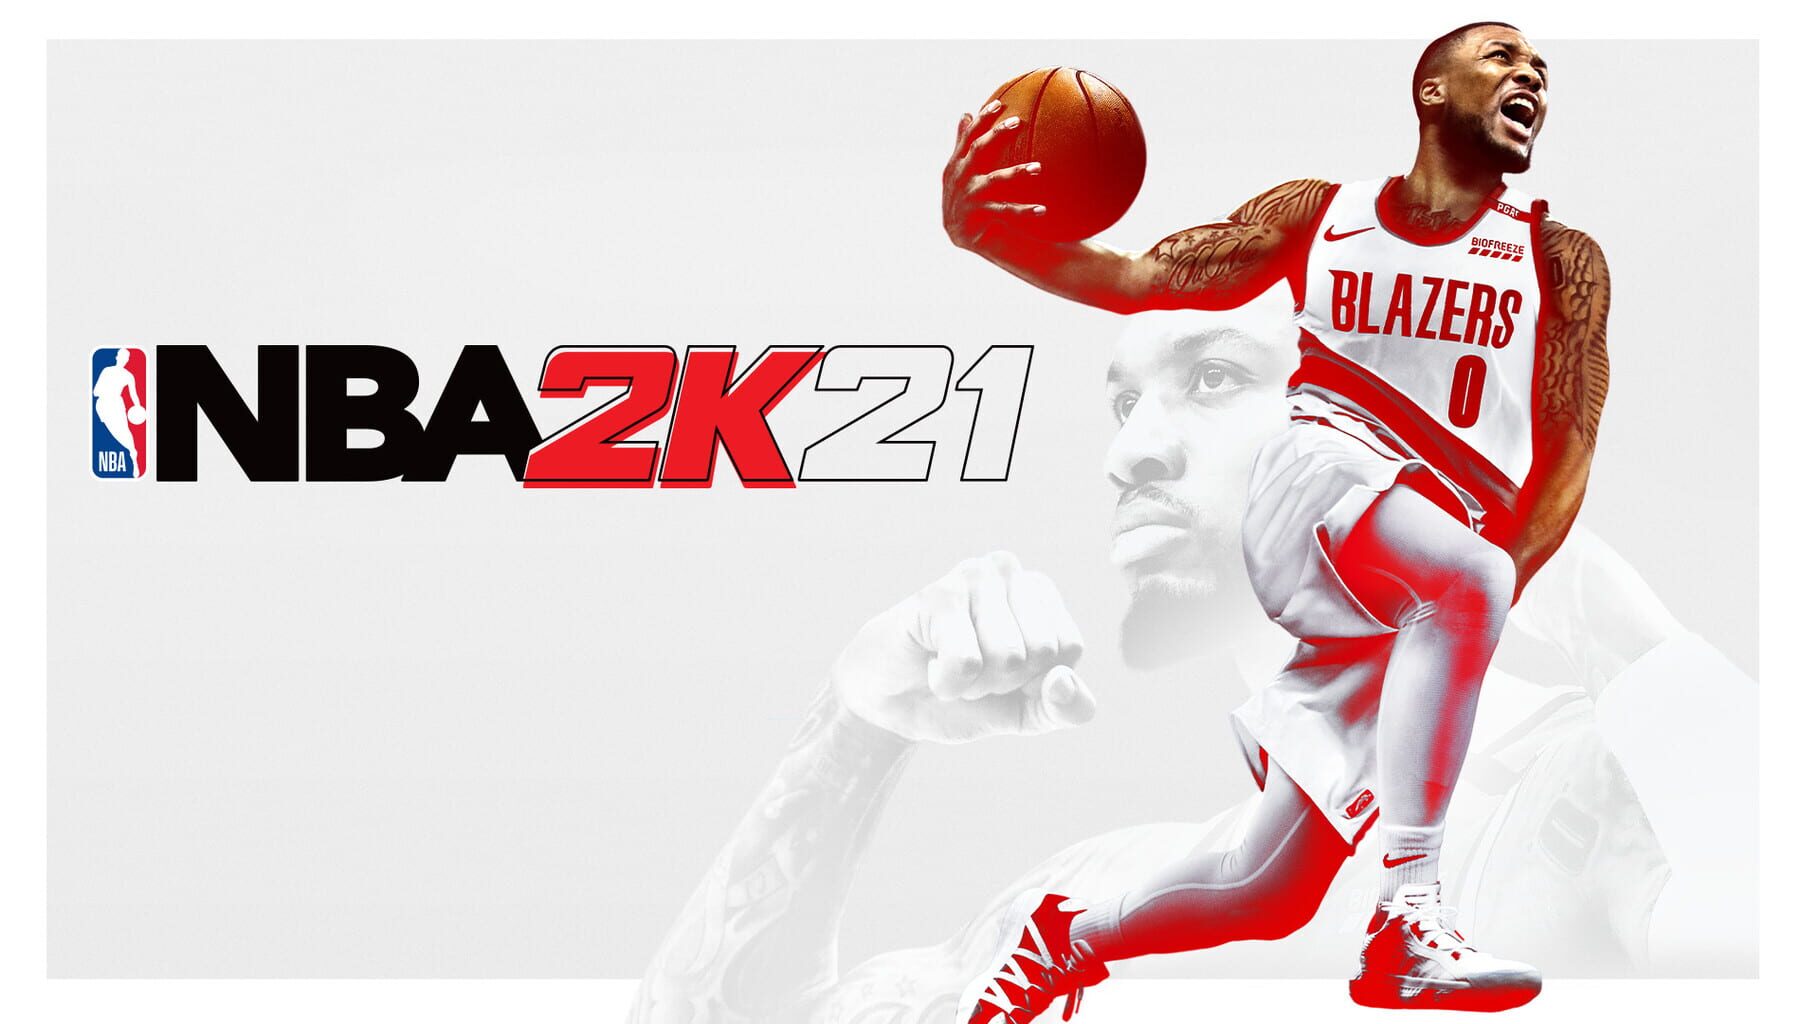 Artwork for NBA 2K21